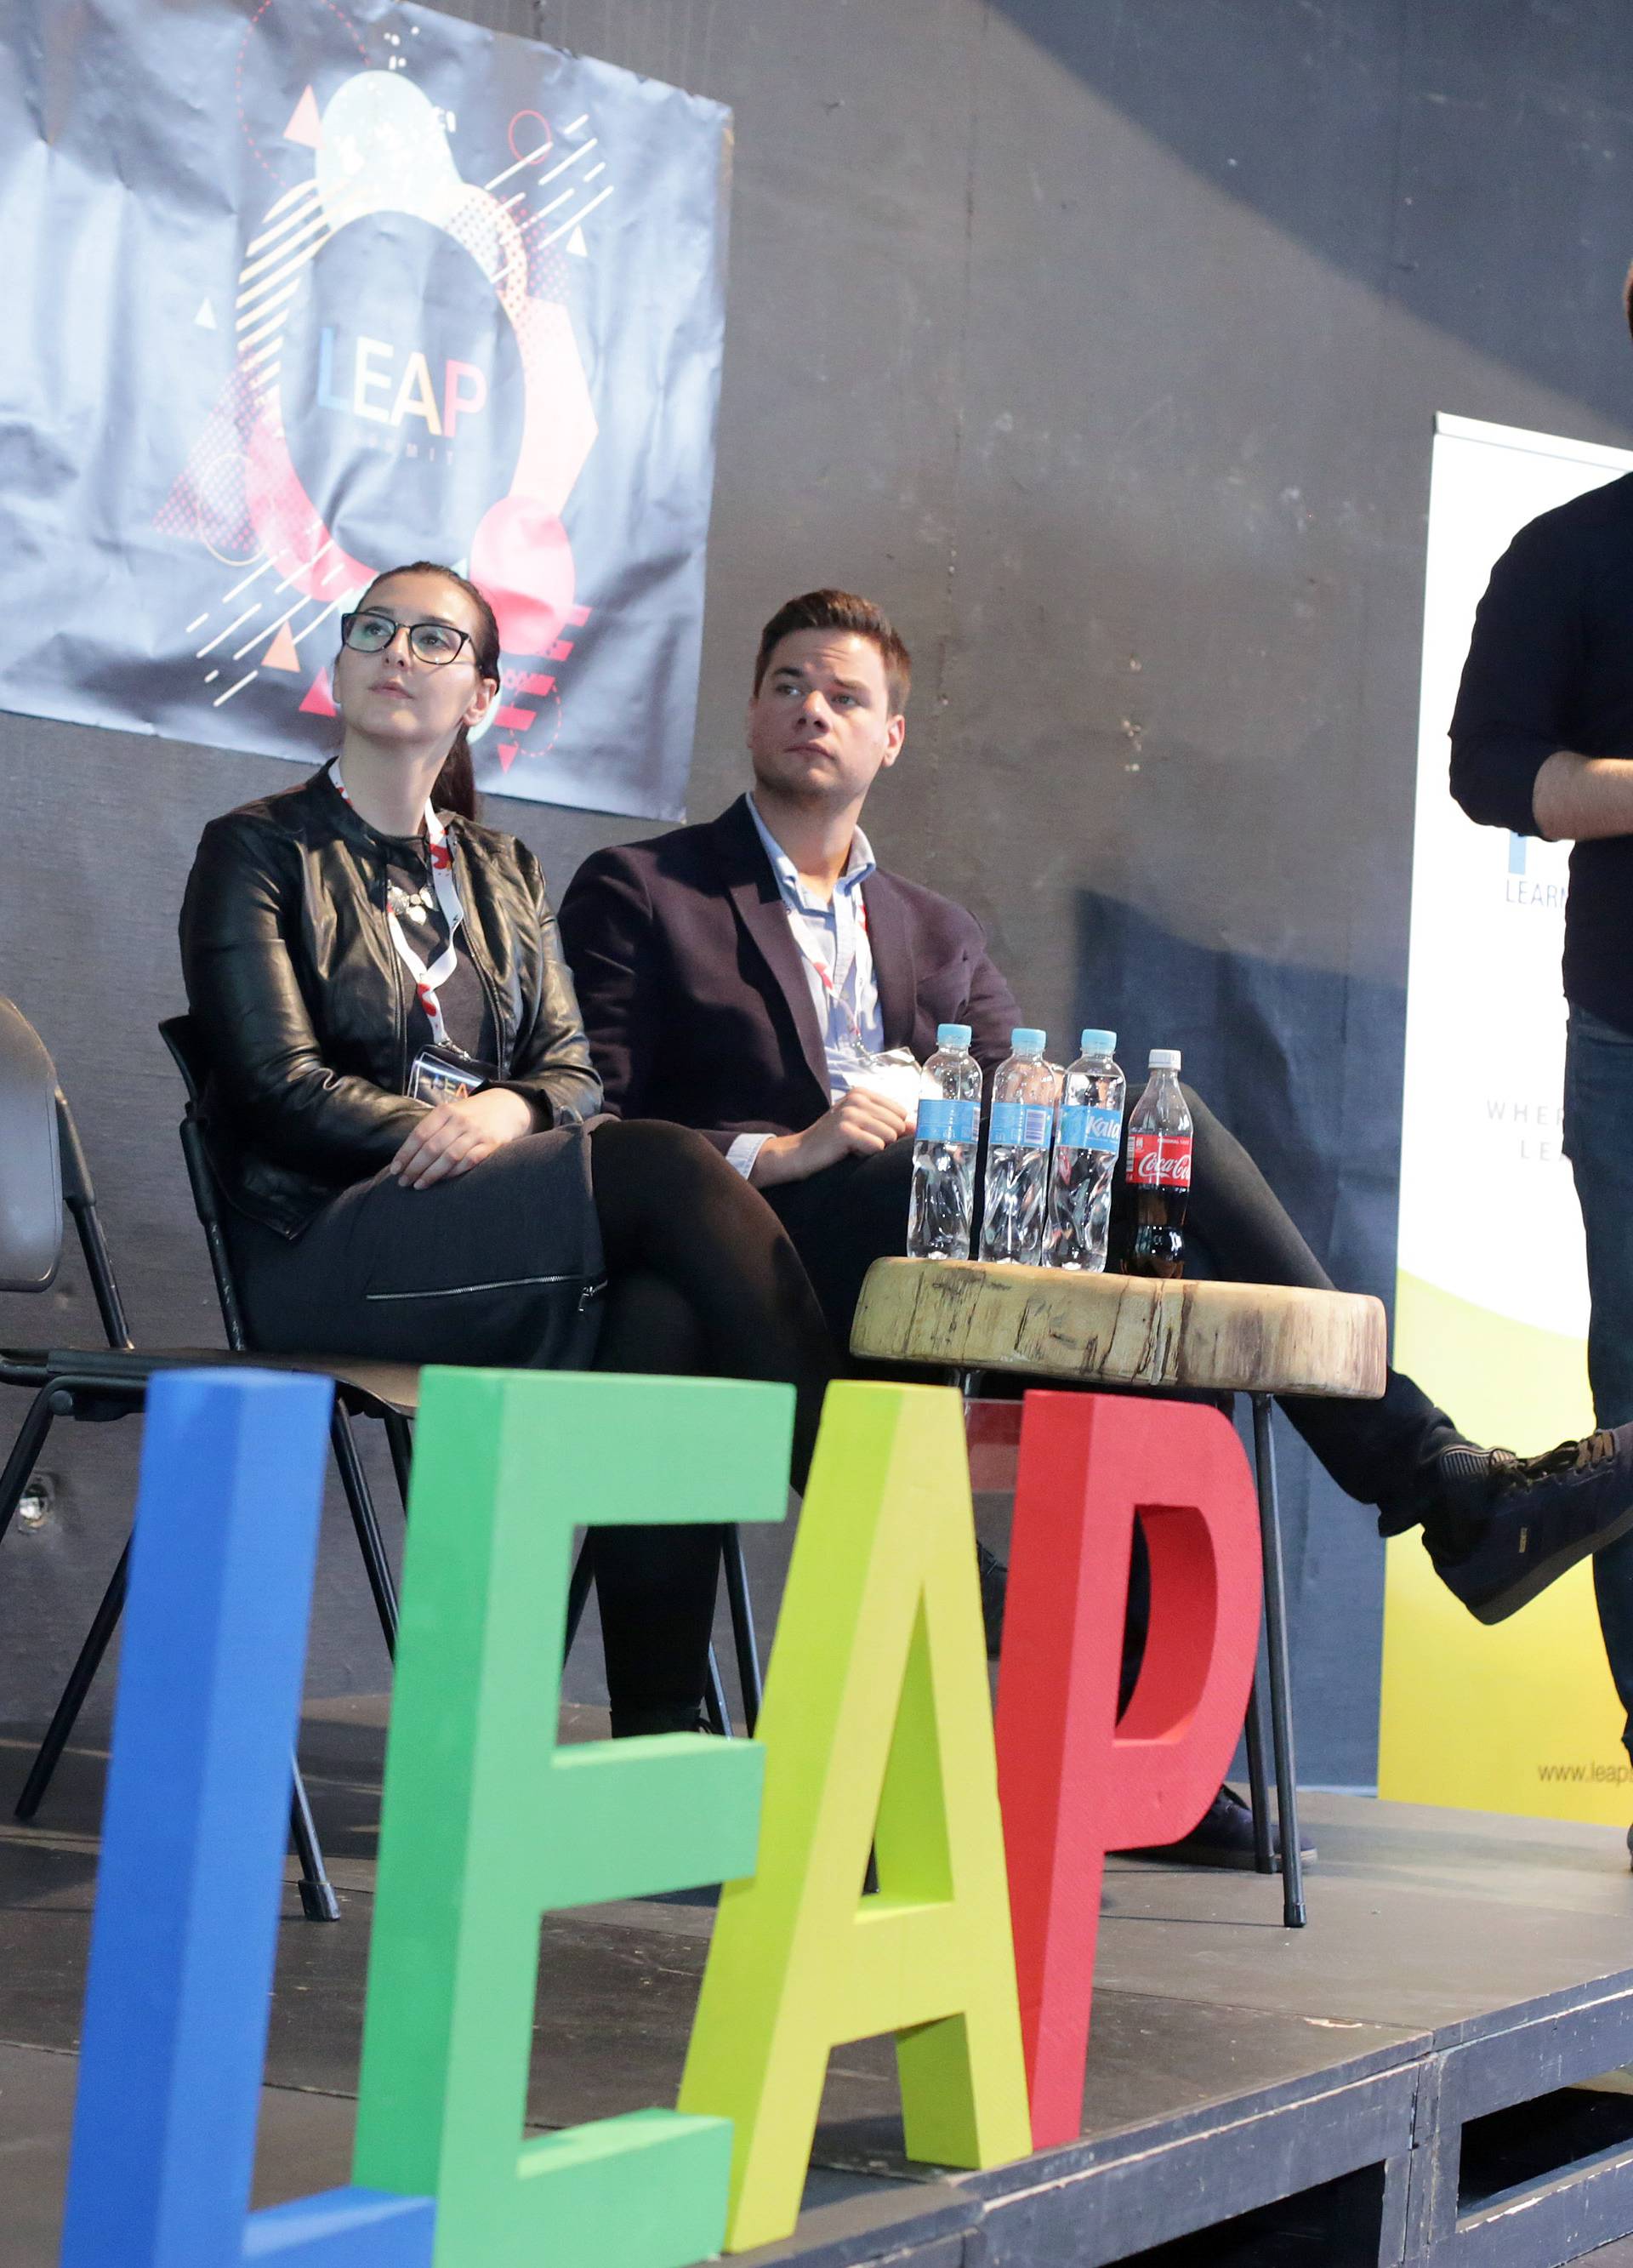 'Leap summit': 24sata uživo prate sve najvažnije događaje